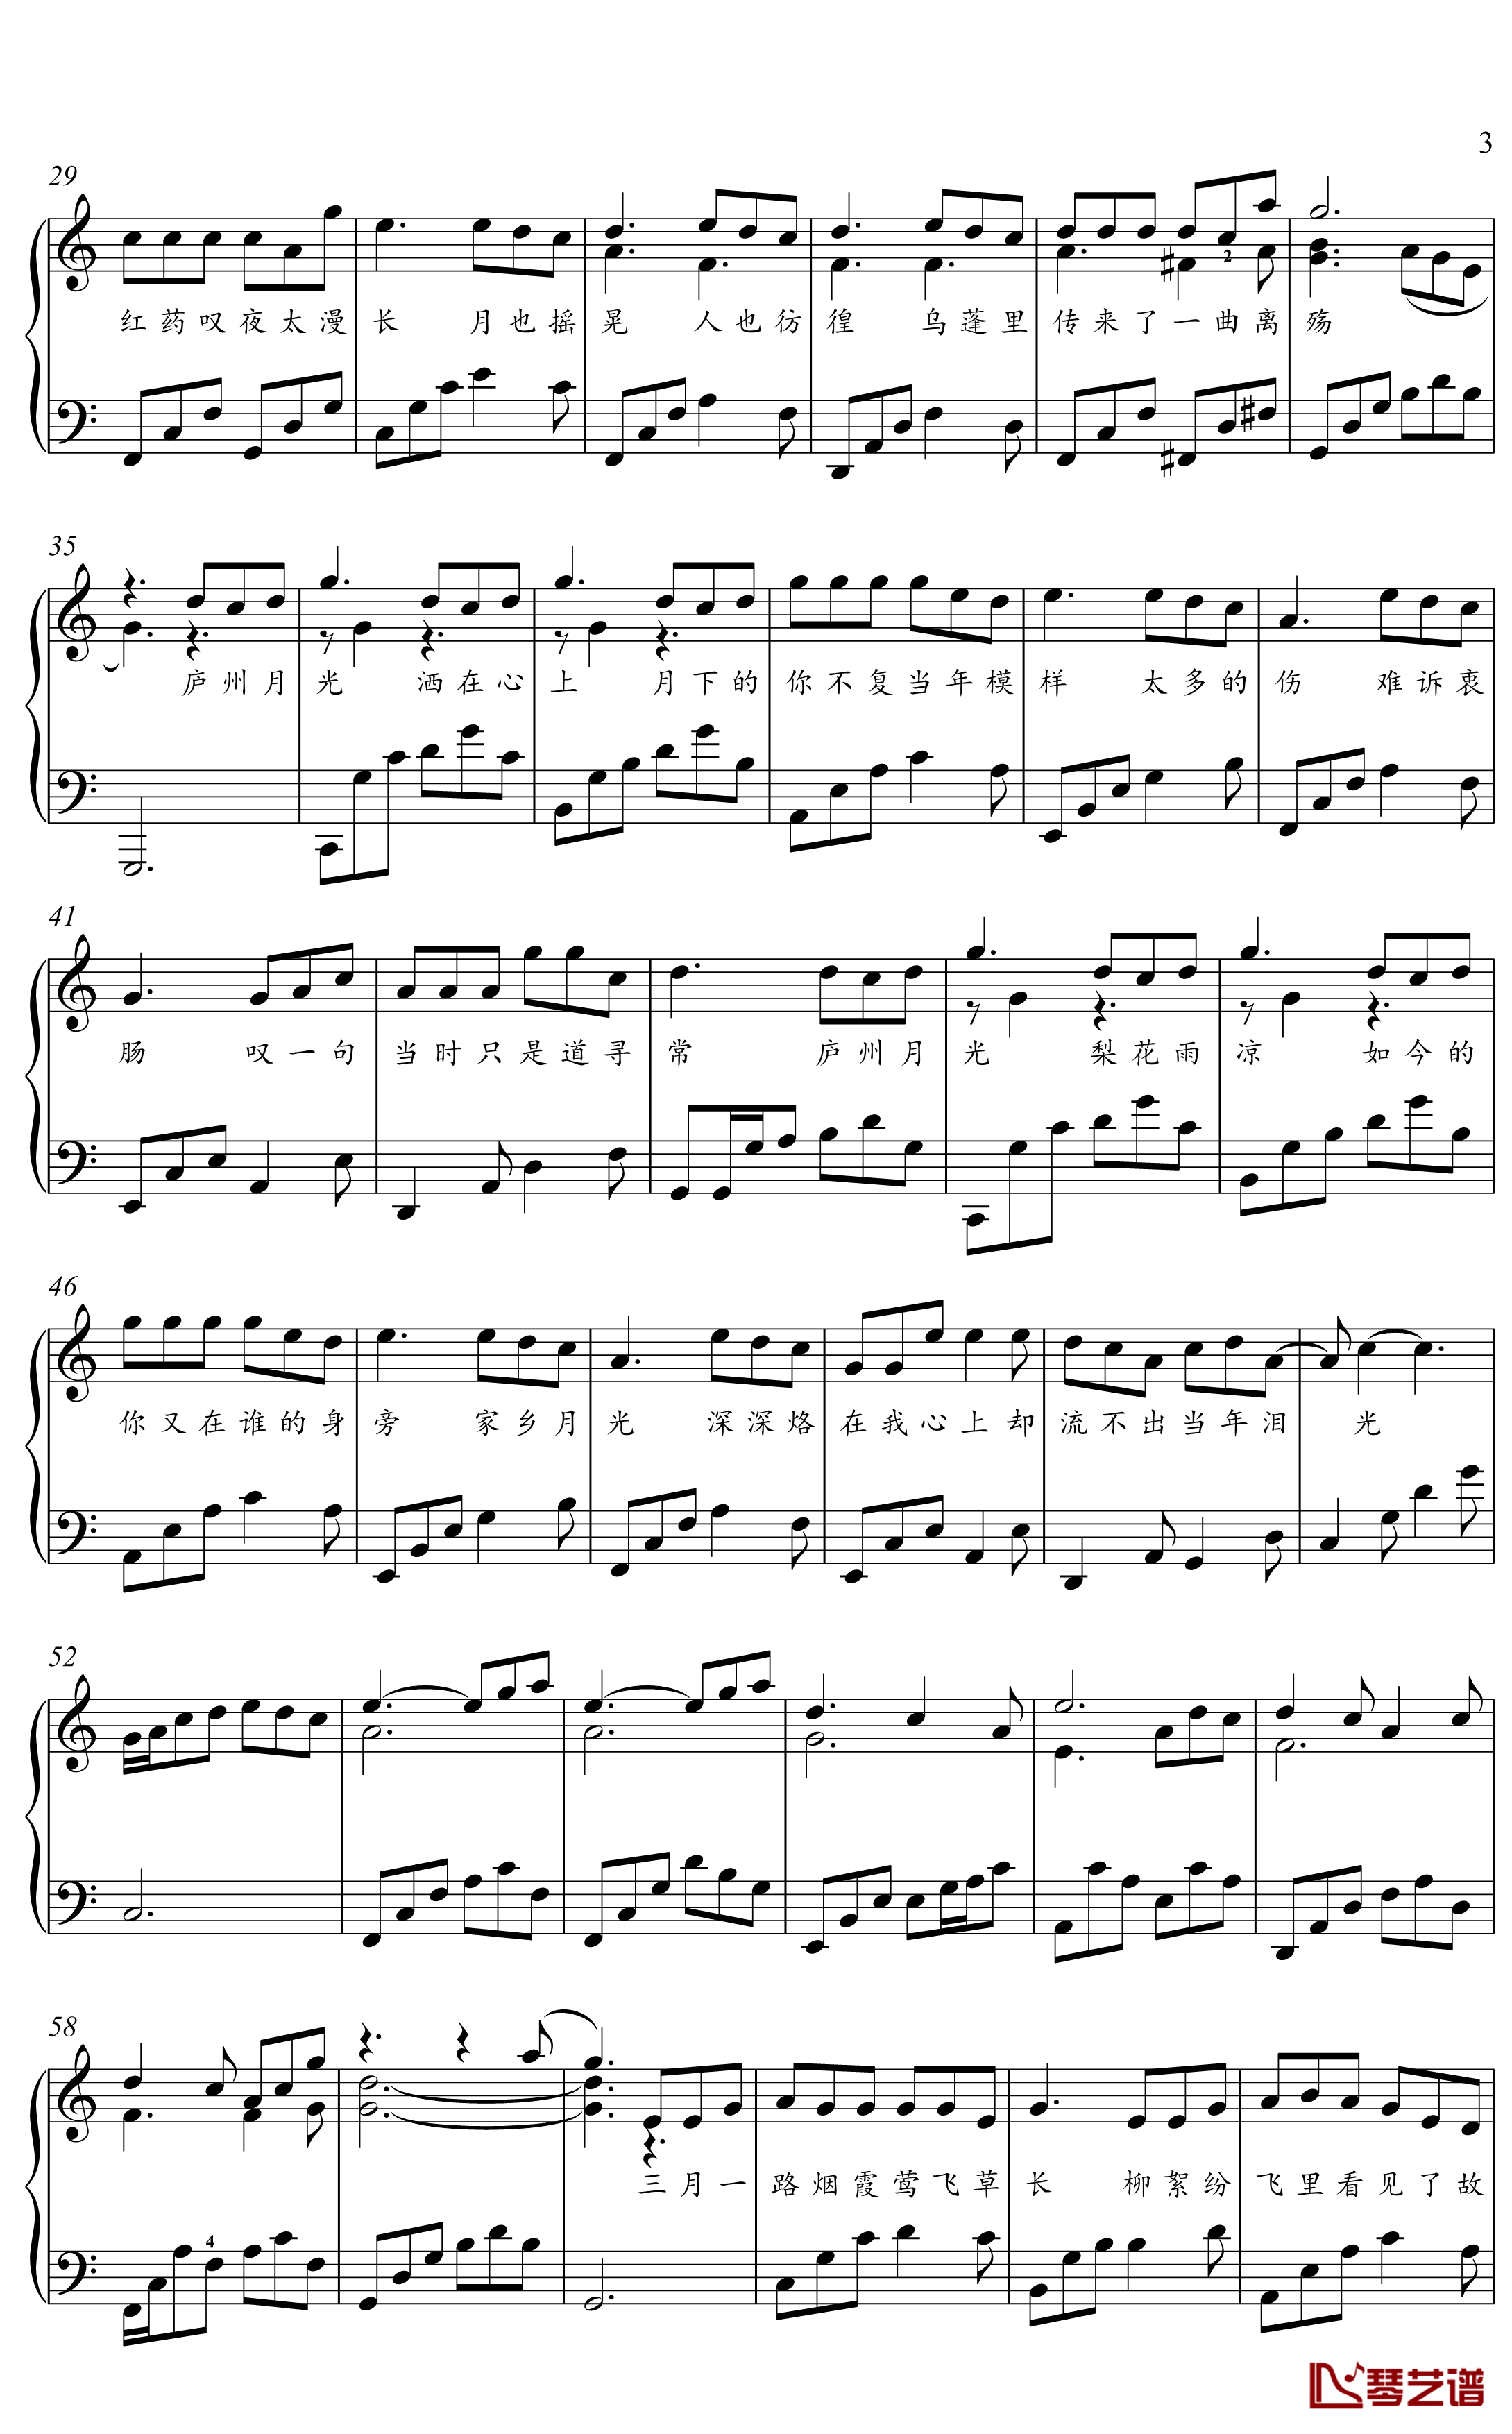 庐州月钢琴谱-金老师钢琴独奏谱1912103